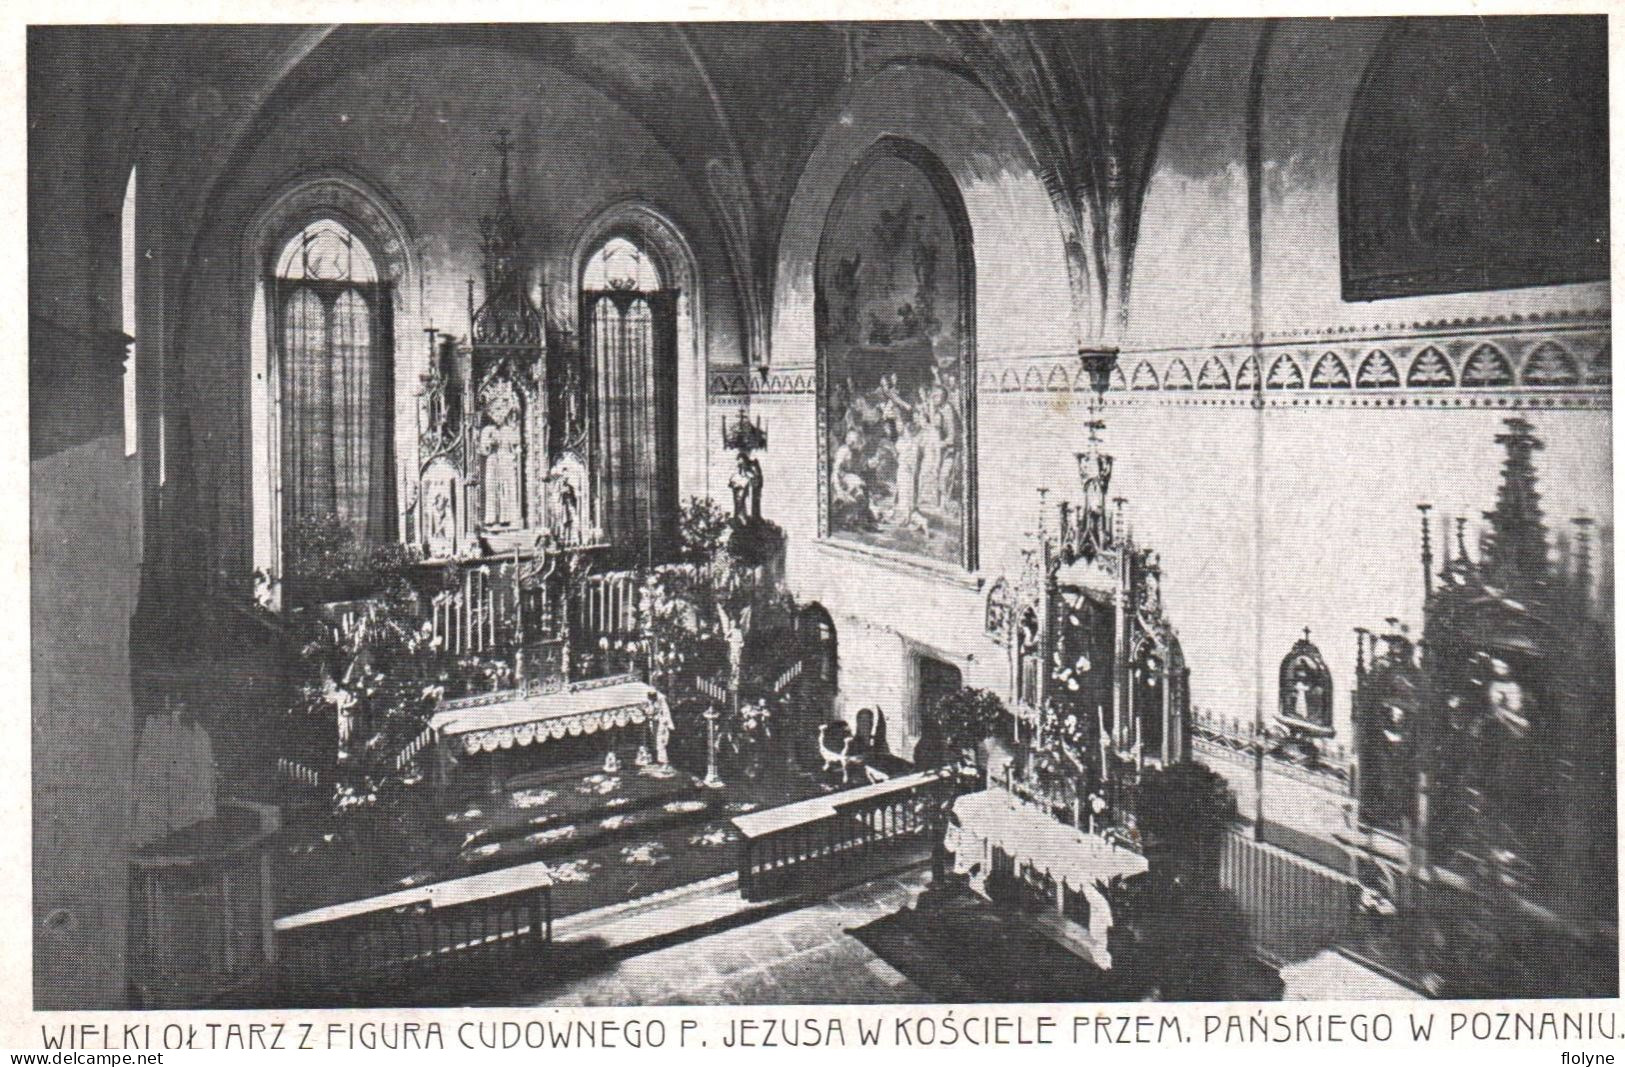 Poznan - Wielki Oltarz Z Figura Cudownego P. Jezusa W Kosciele Przem , Panskiego W Poznaniu - Pologne Poland - Poland